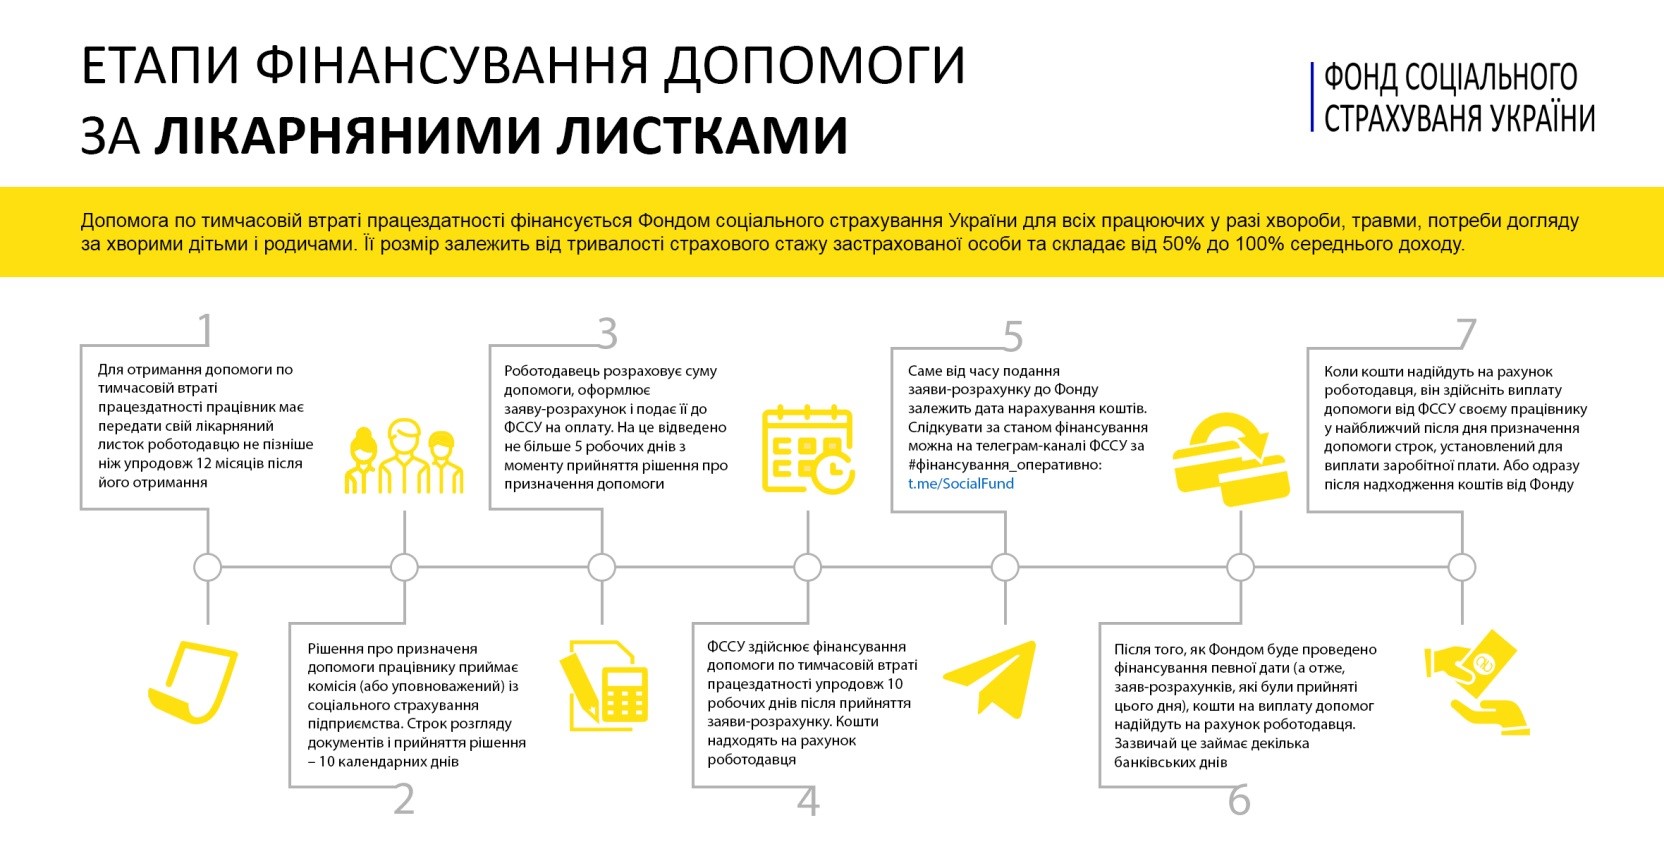 Майже 1,4 млн українців отримали від ФССУ матеріальне забезпечення у І півріччі